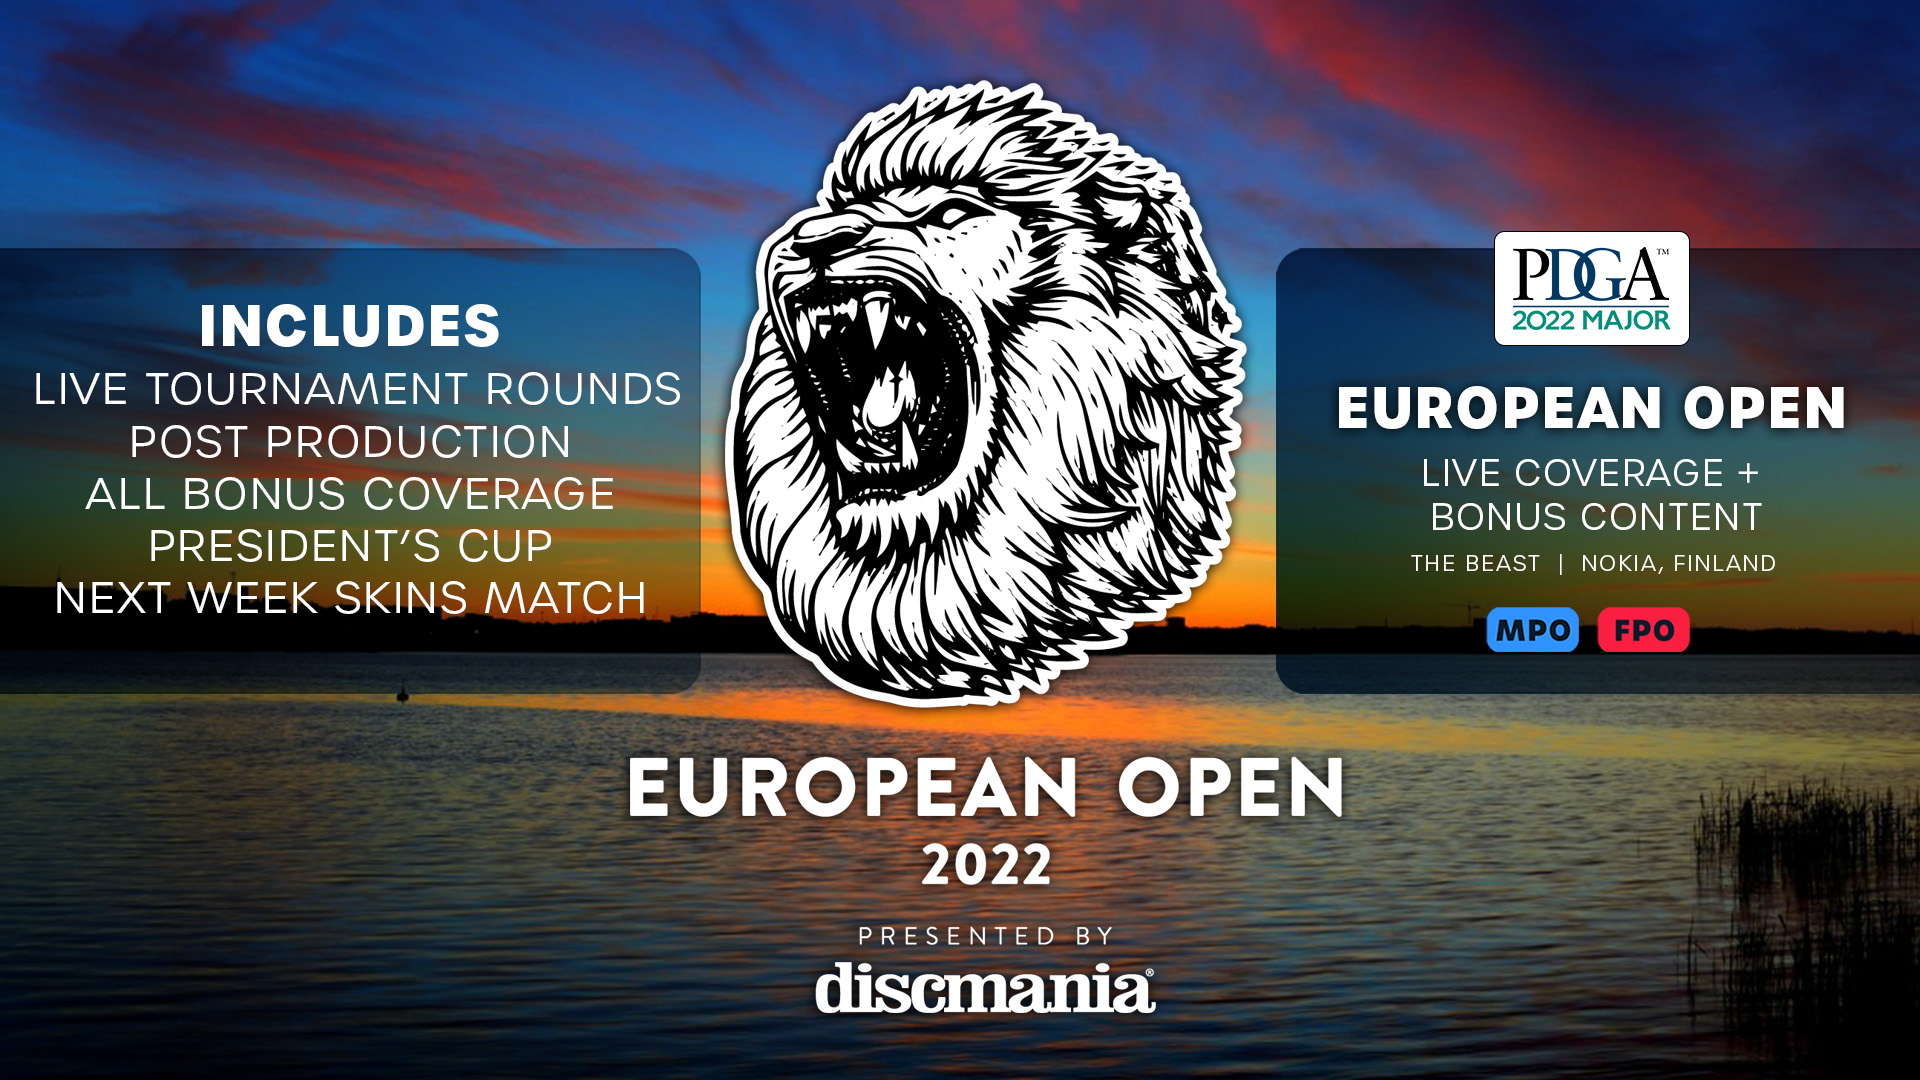 LIVE COVERAGE + BONUS CONTENT 2022 European Open